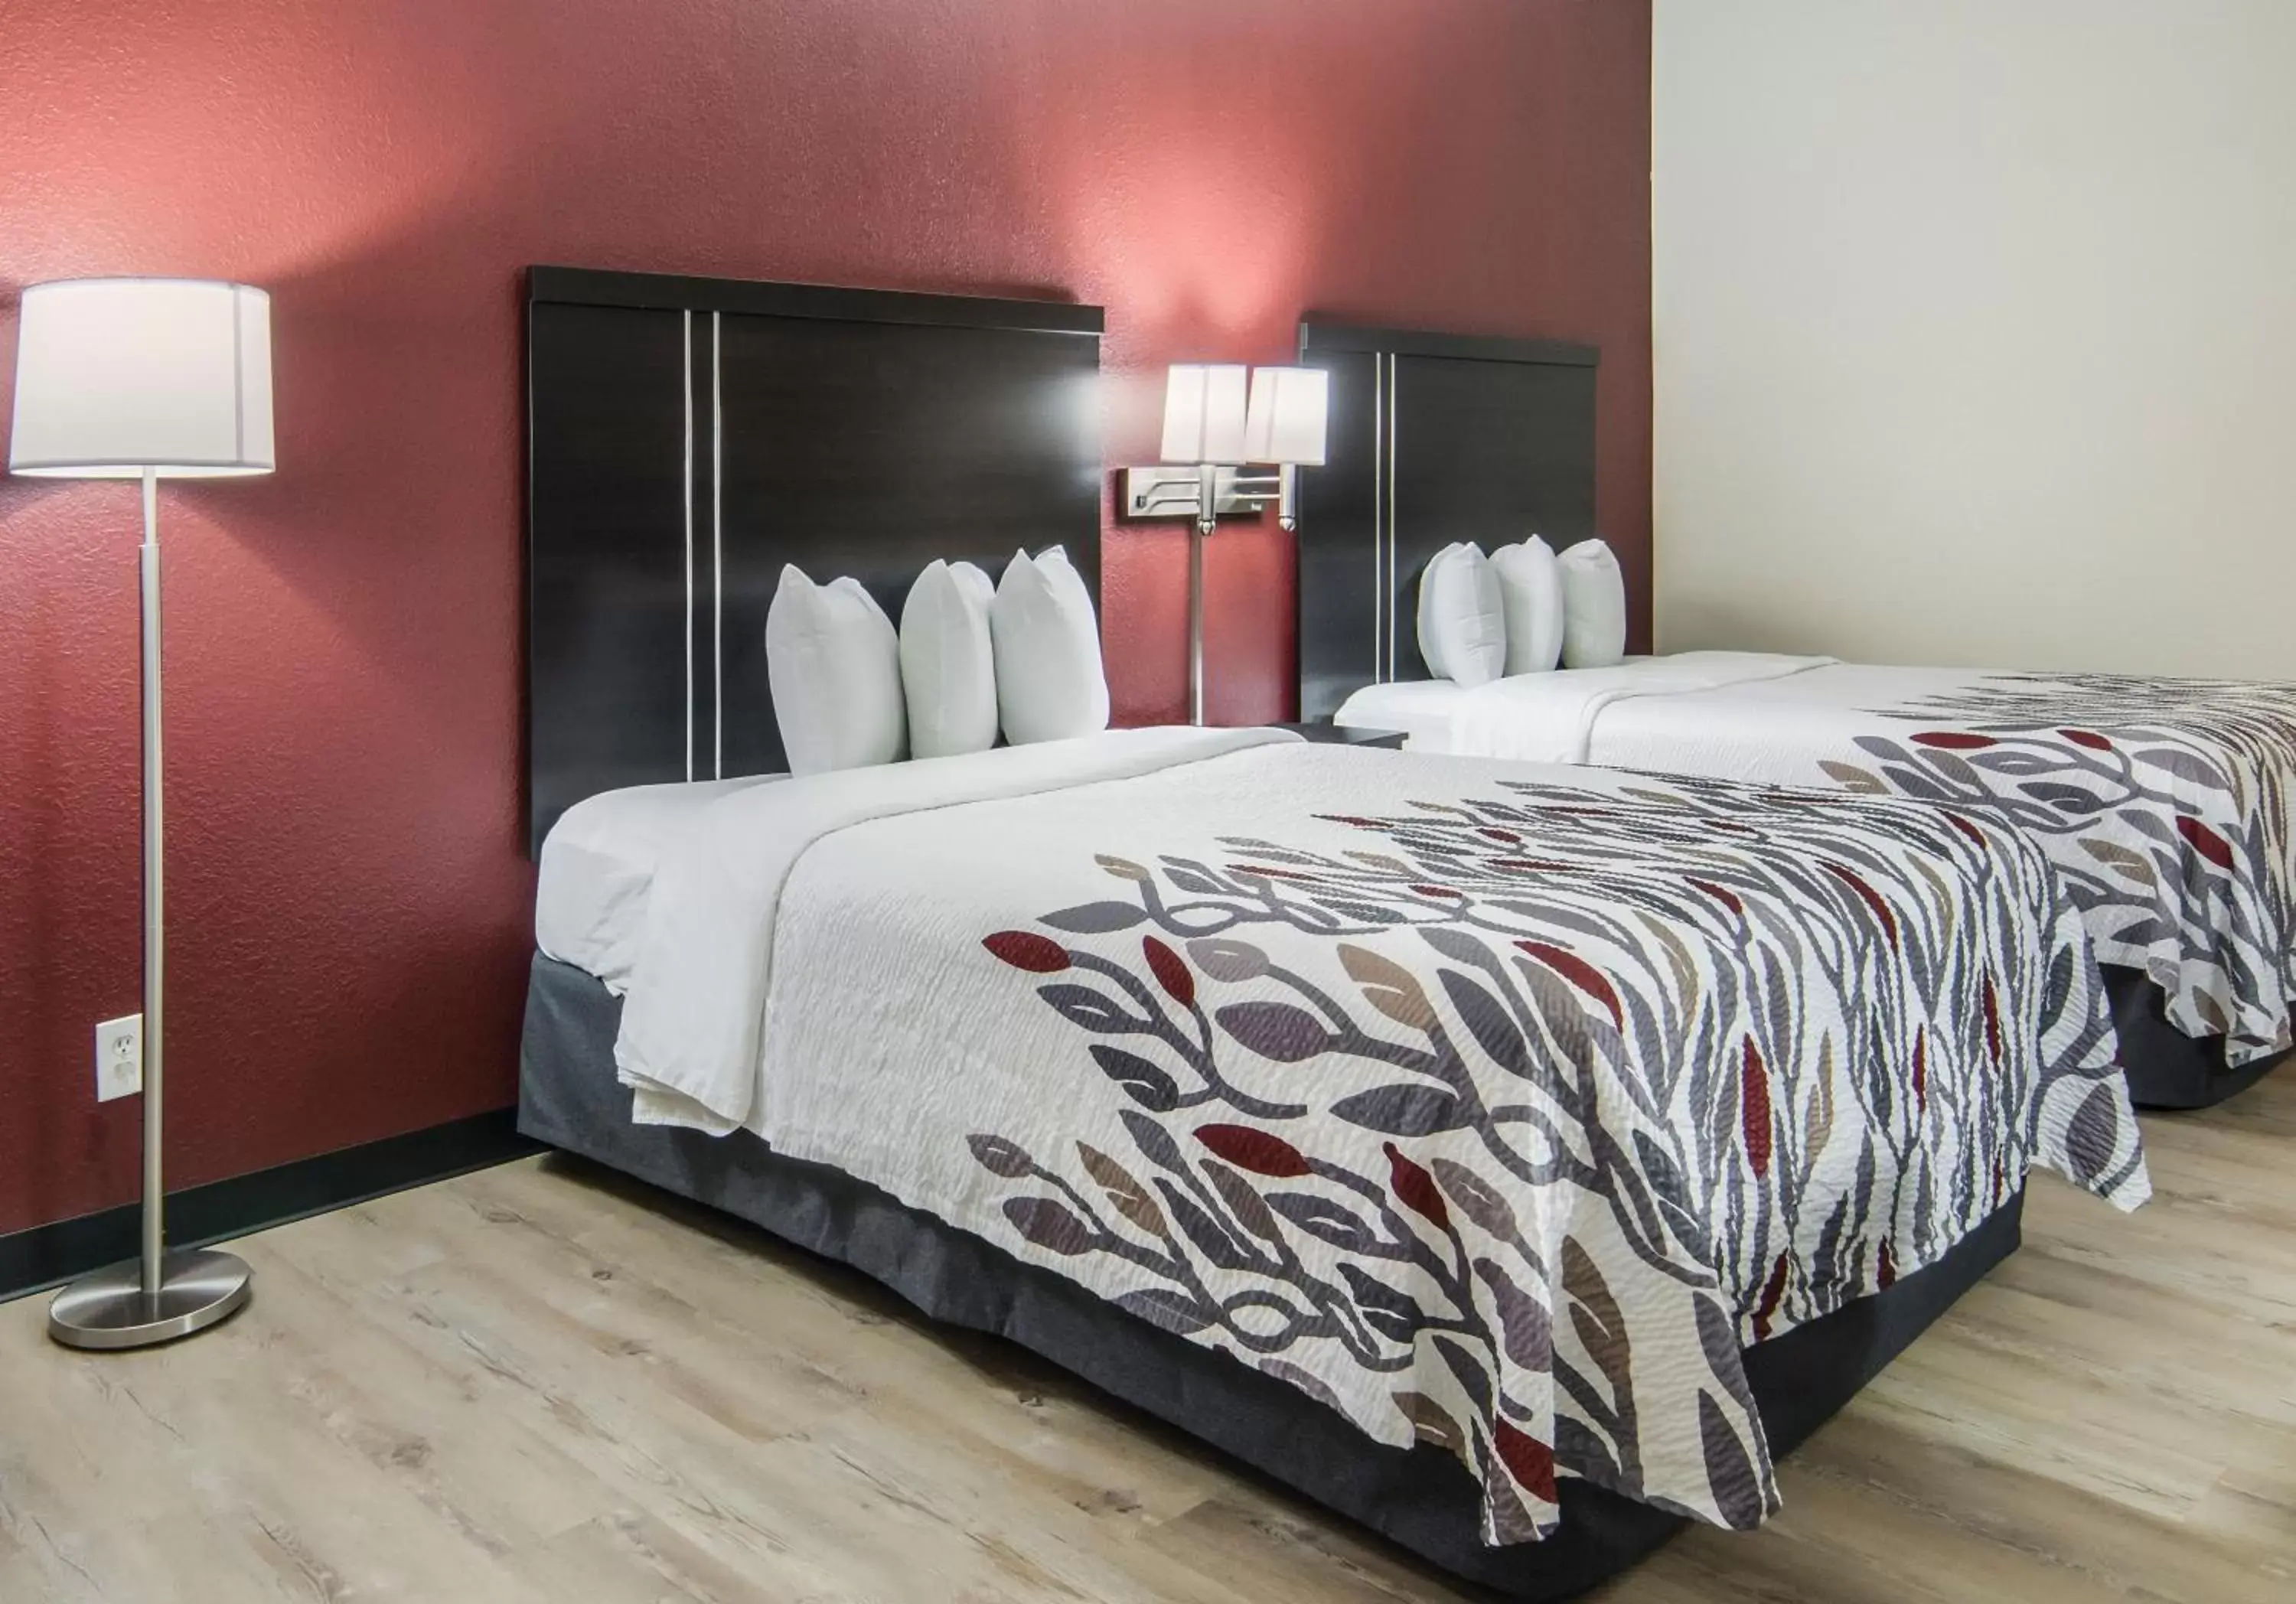 Bedroom, Room Photo in Red Roof Inn Binghamton North